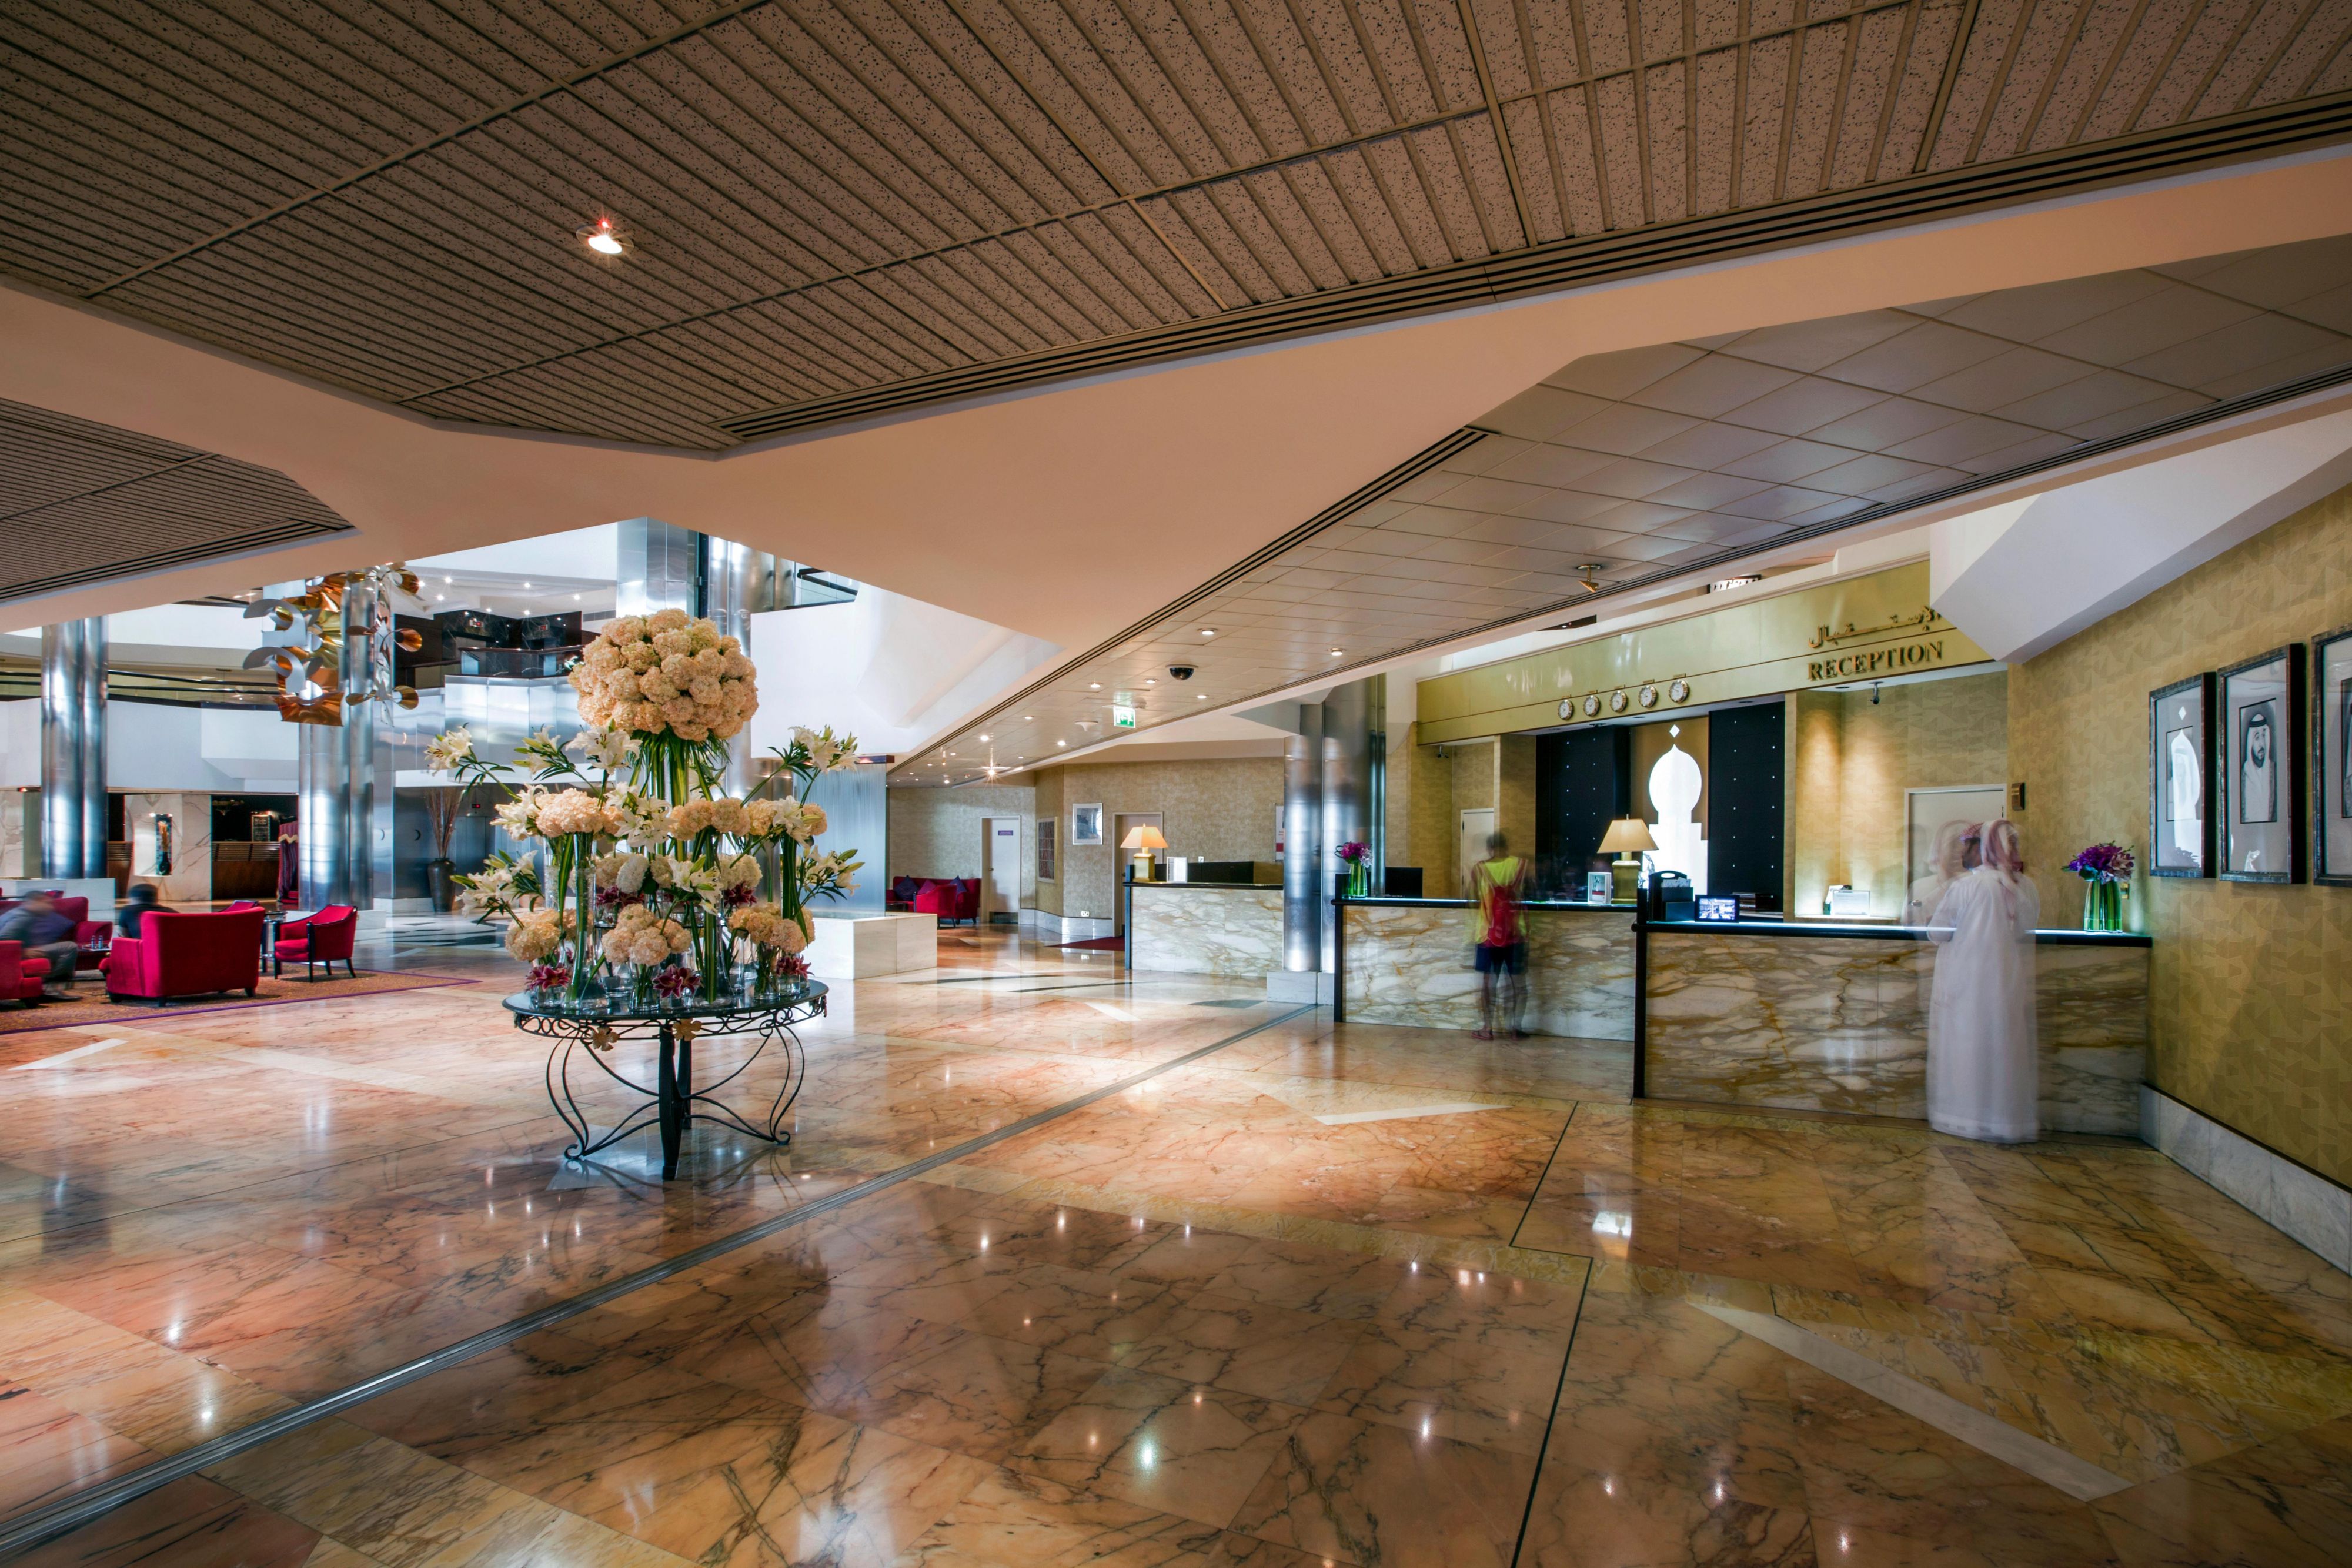 Crowne Plaza Dubai-Deira - 5 star hotel in Dubai - RECEPTION